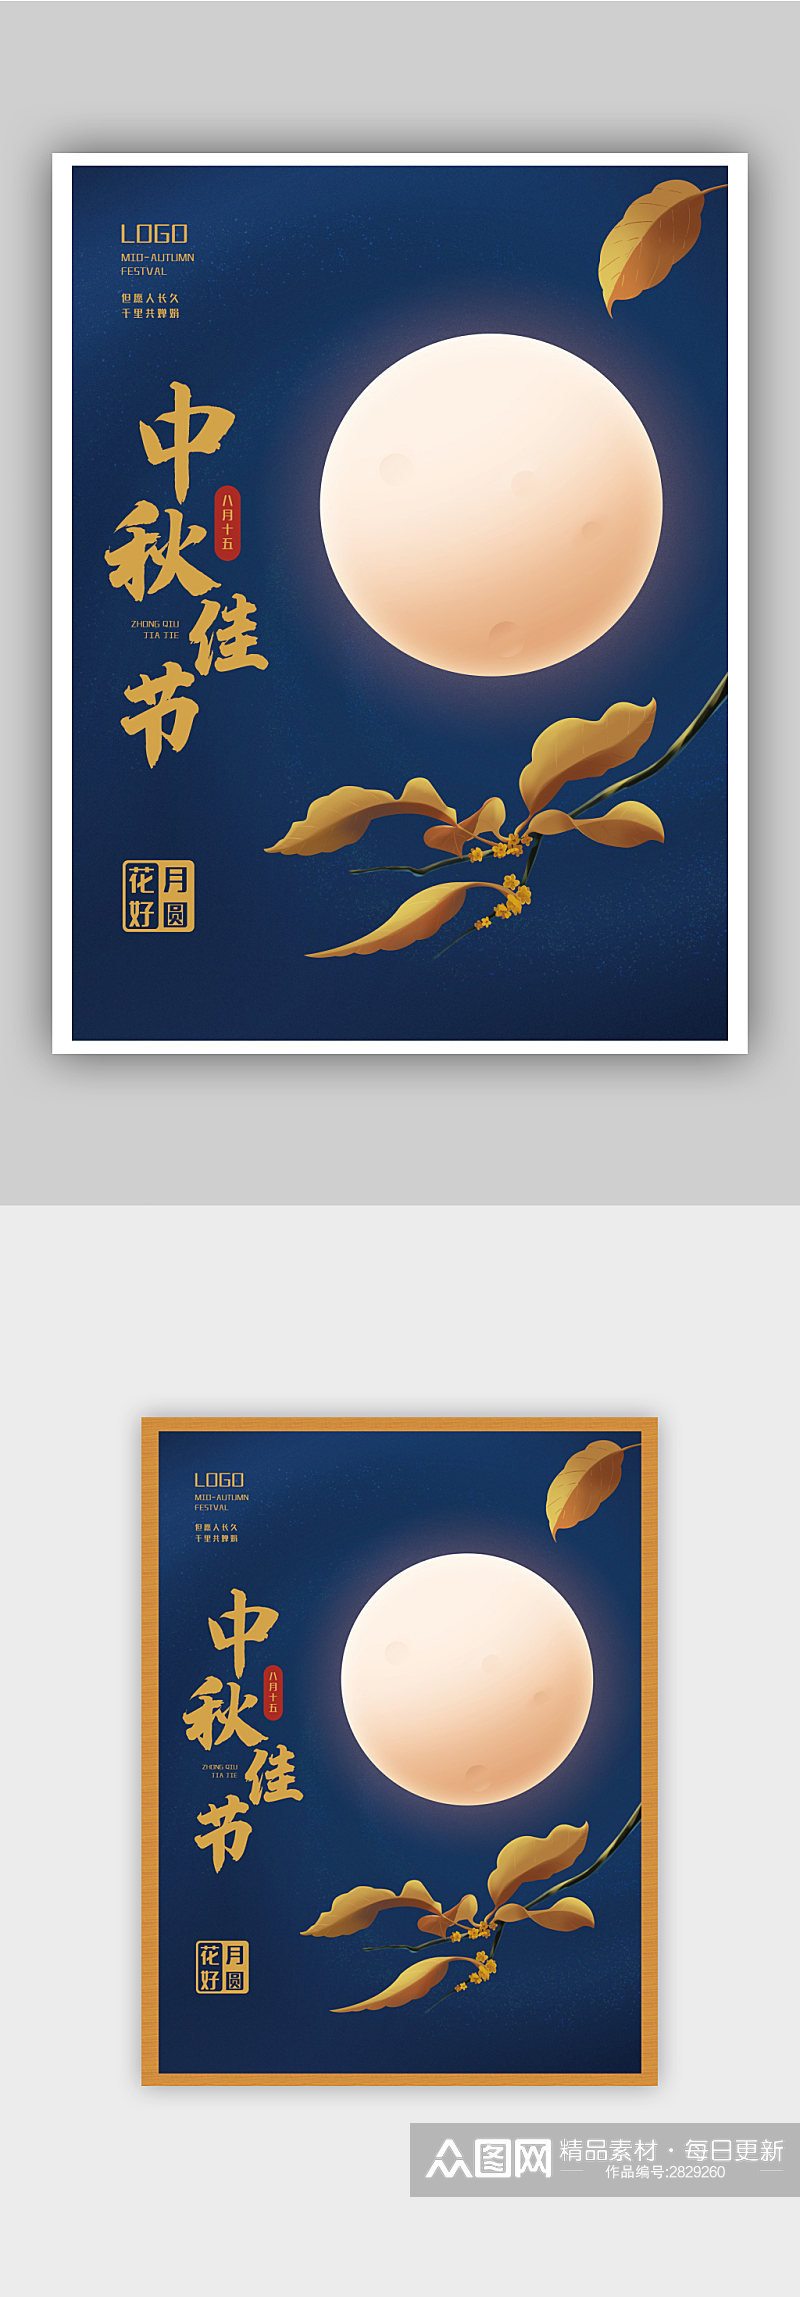 原创中秋节八月十五满月桂花传统节日海报素材